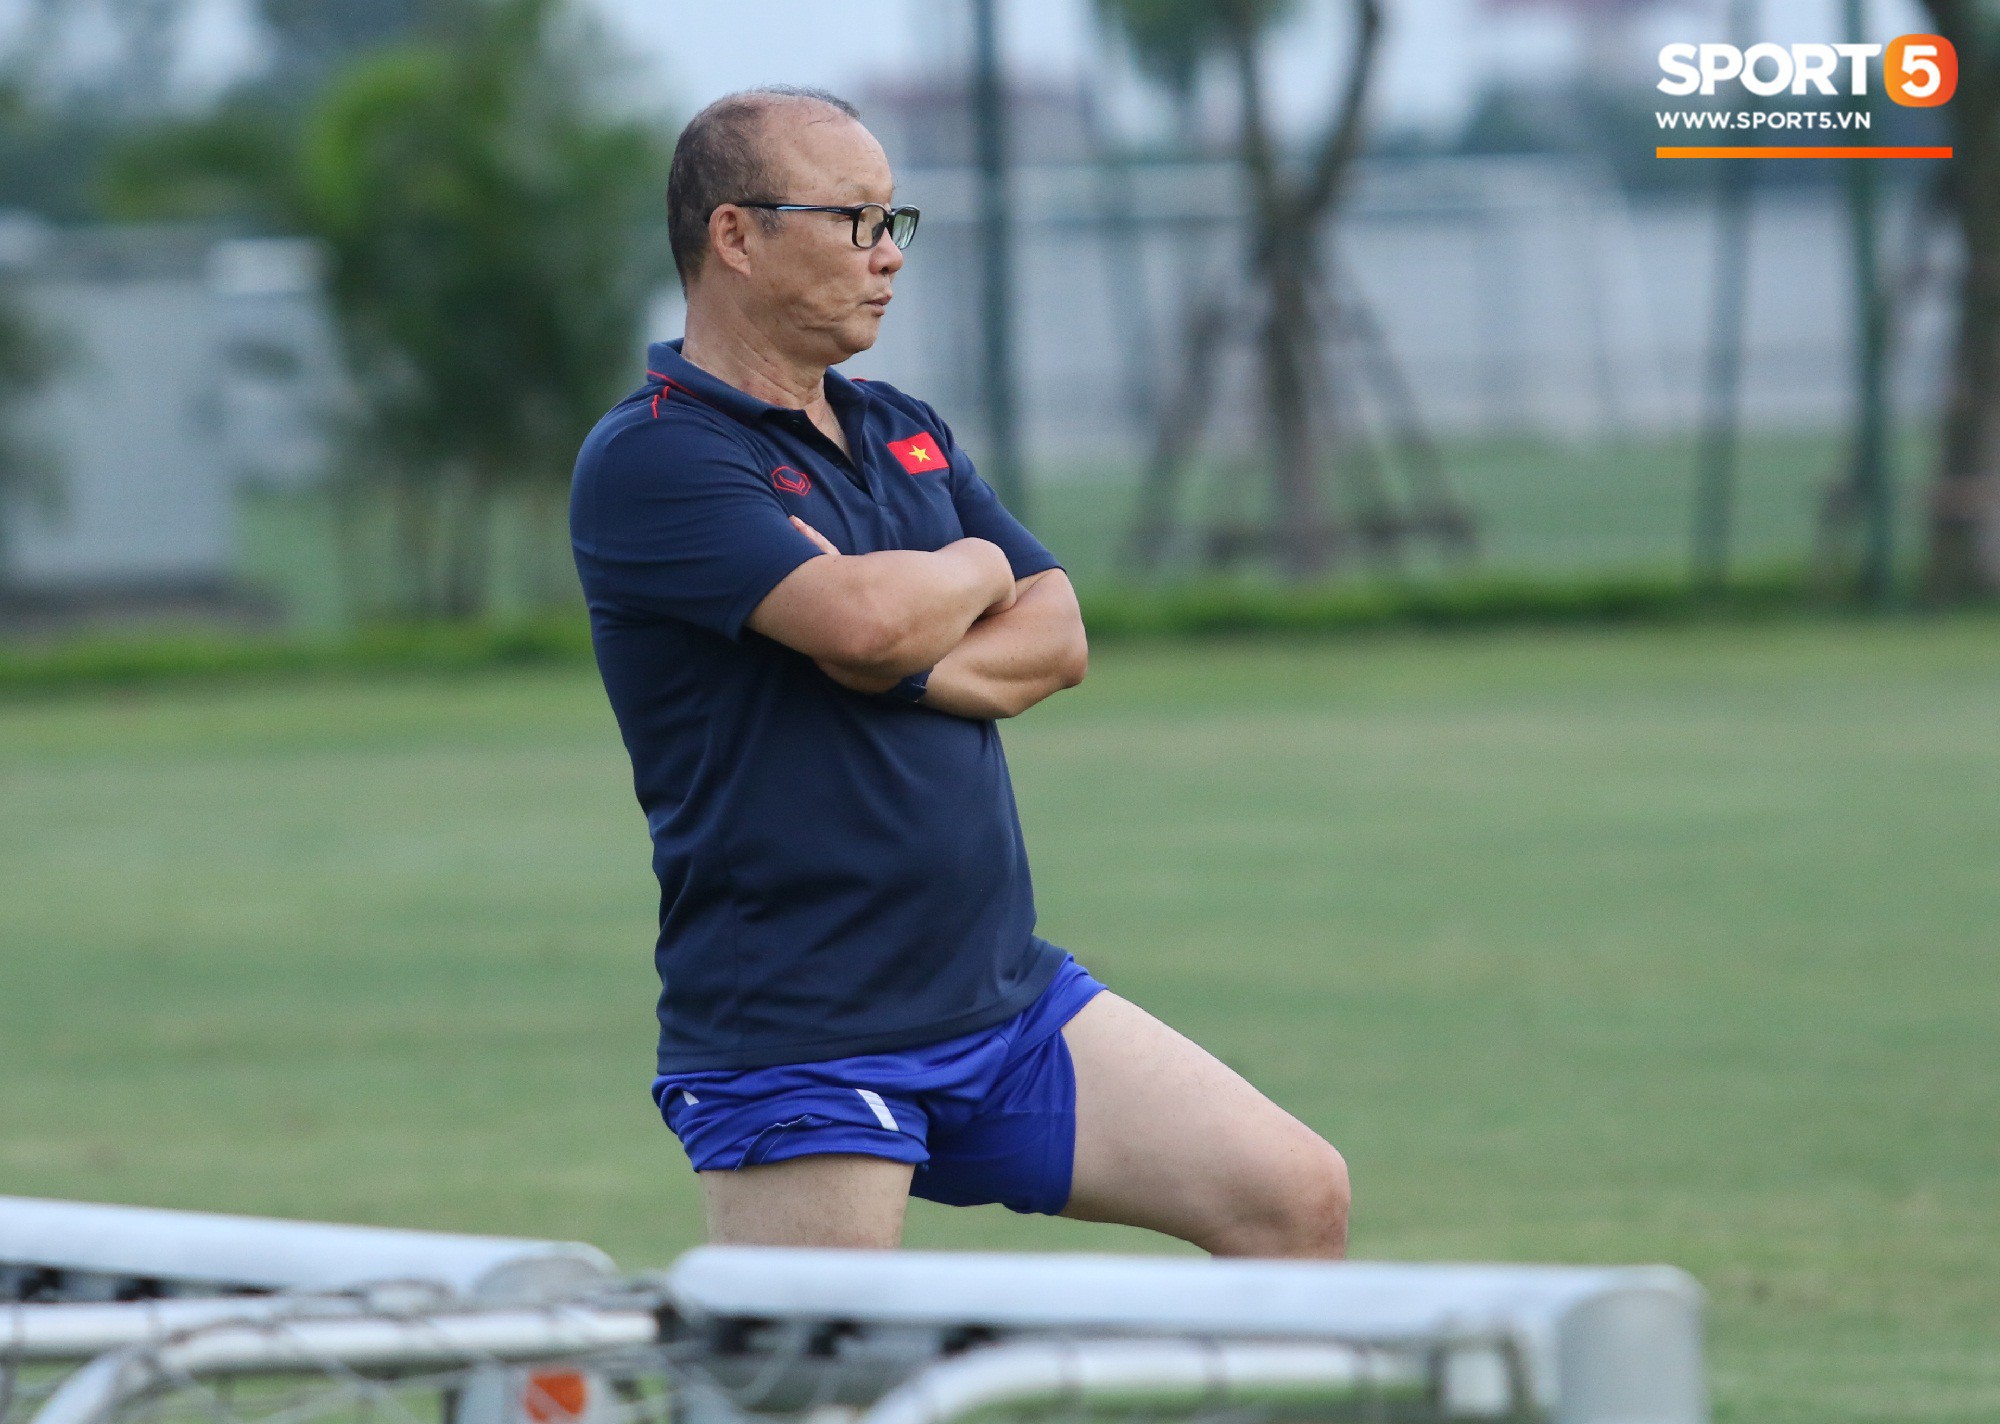 Trợ lý bất lực, HLV Park Hang-seo lao vào sân đích thân dạy bảo cầu thủ U22 Việt Nam - Ảnh 6.